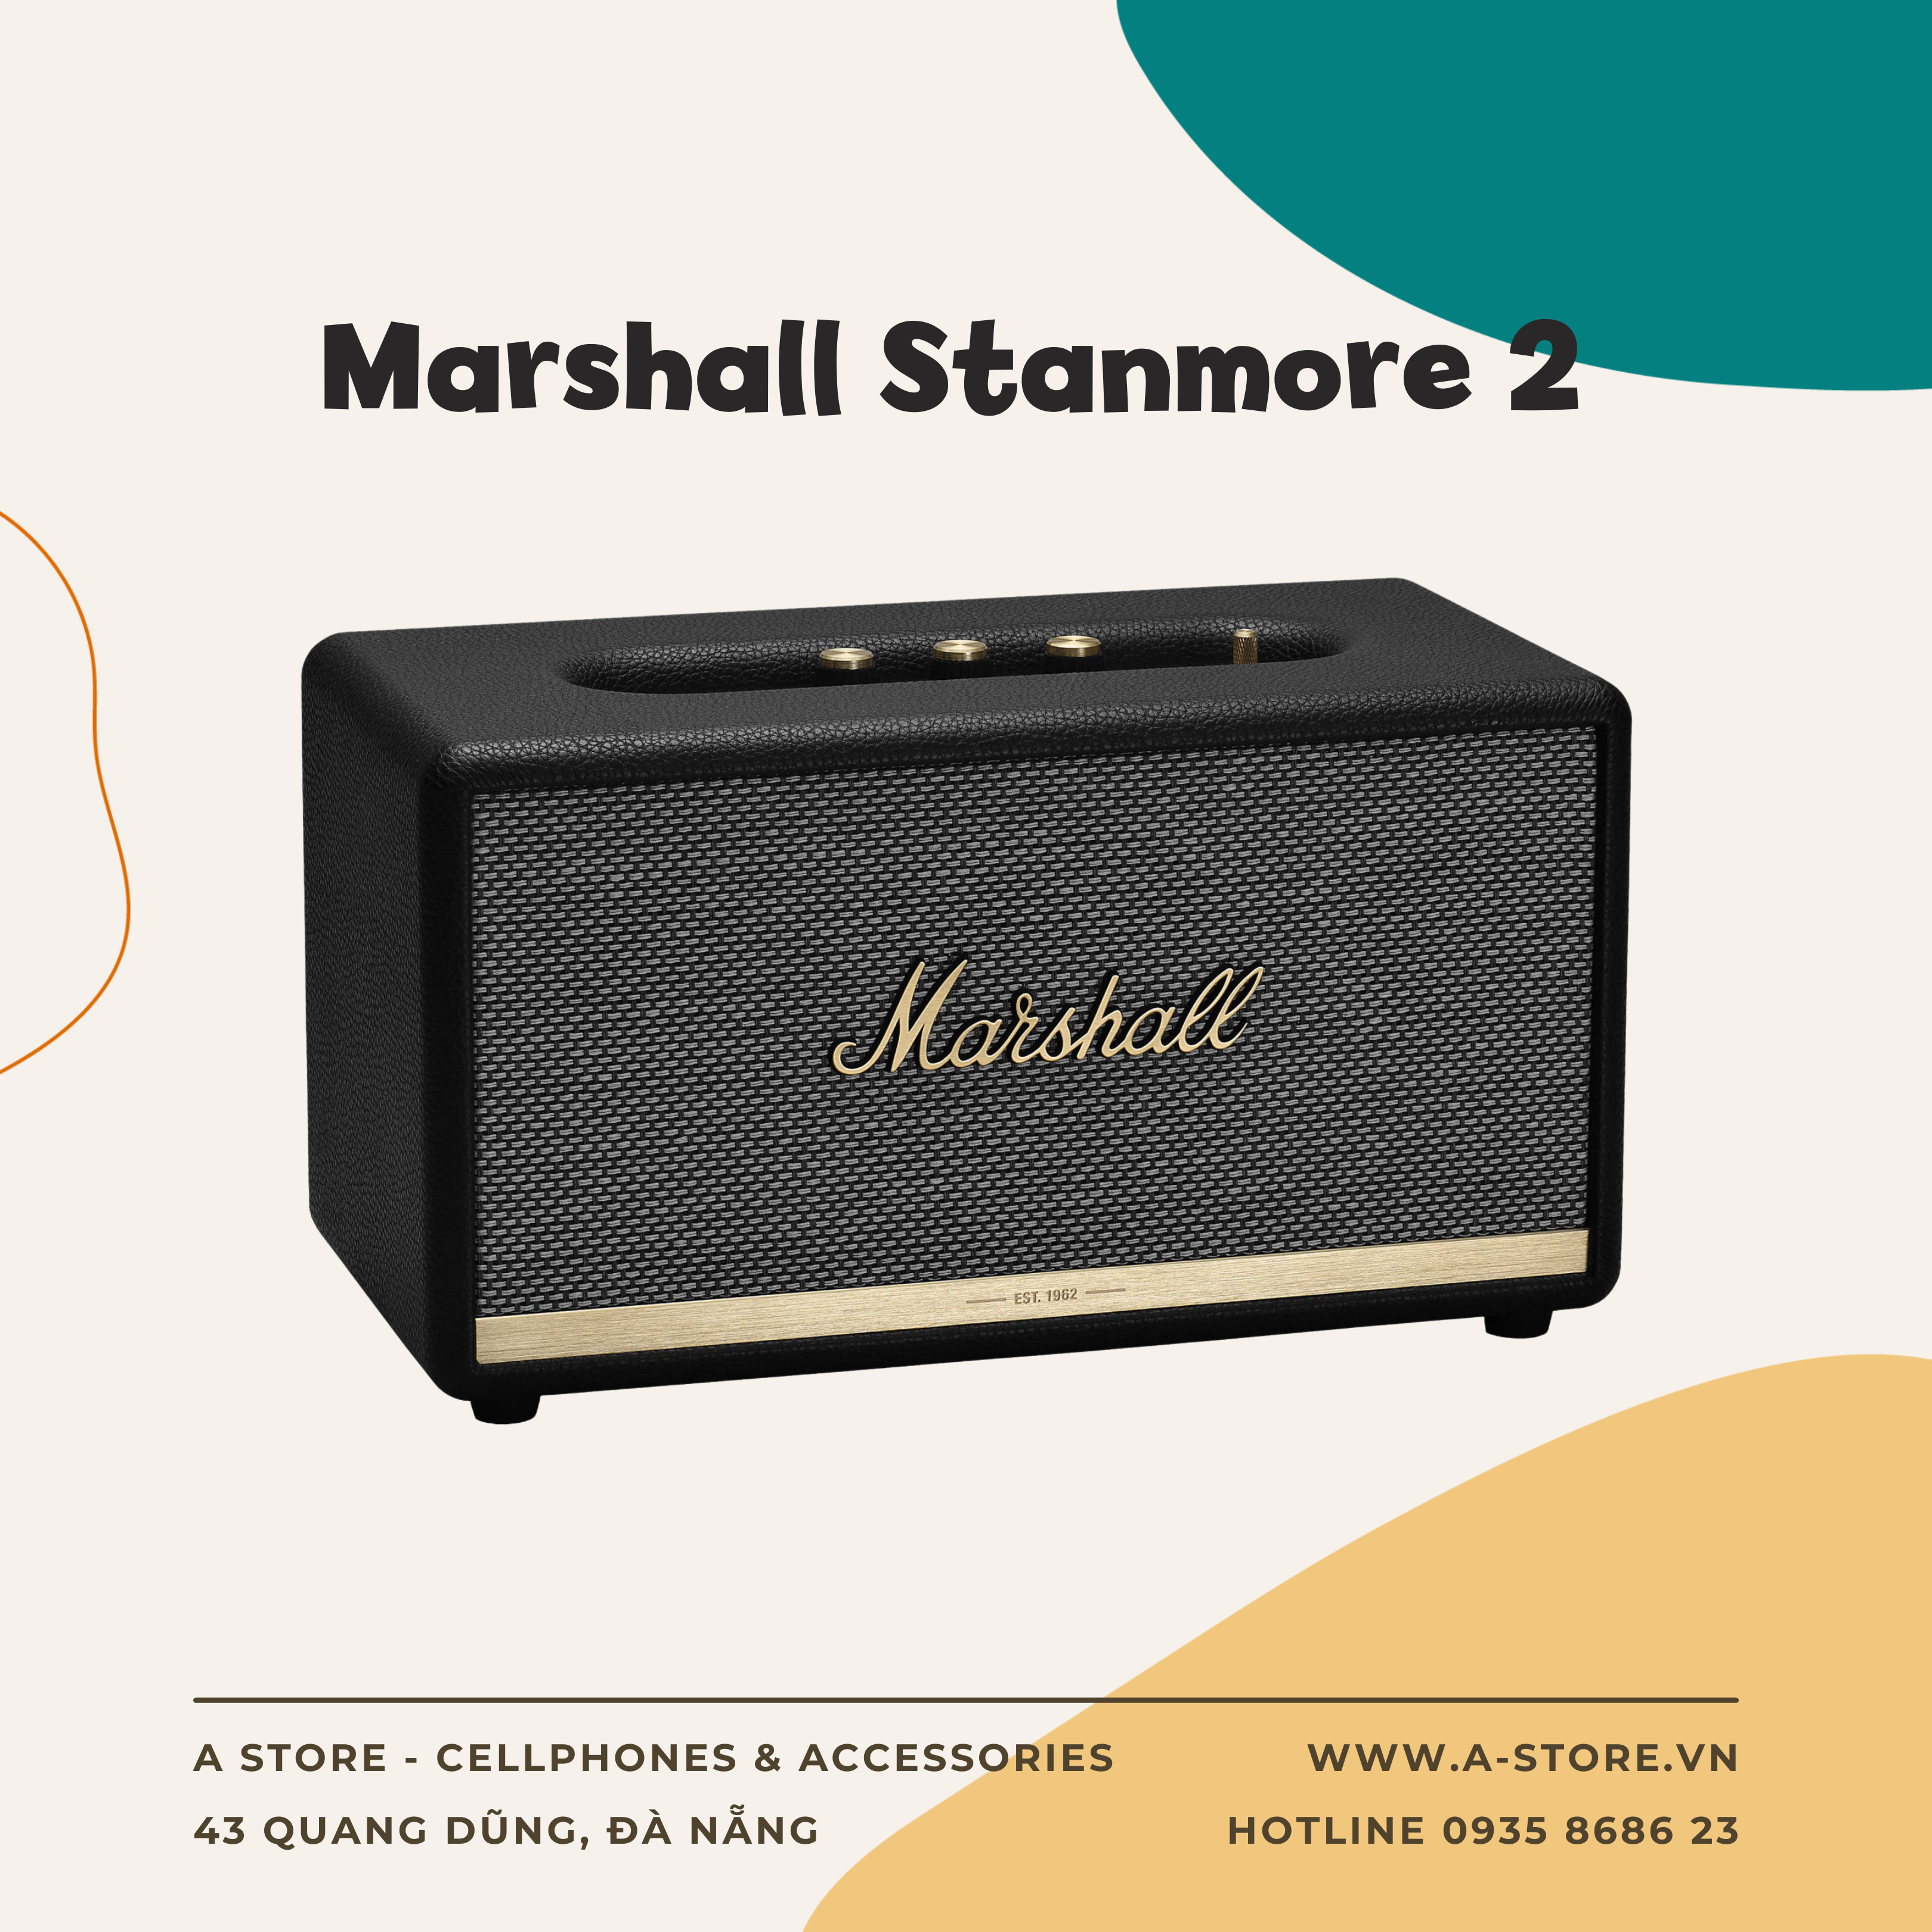 Marshall Stanmore 2 - Astore